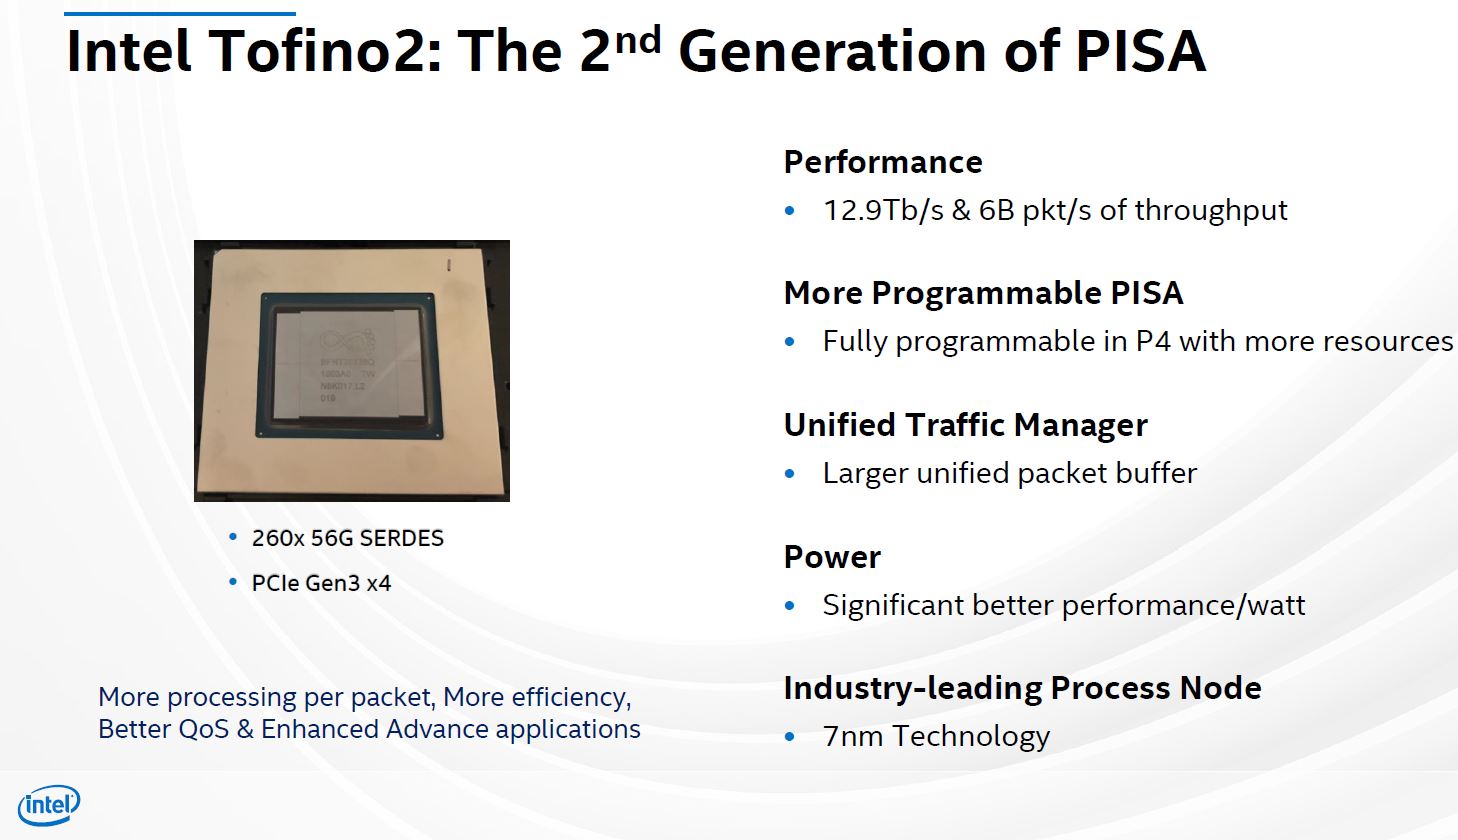 Hot Chips 32 Intel Tofino2 PISA Gen2